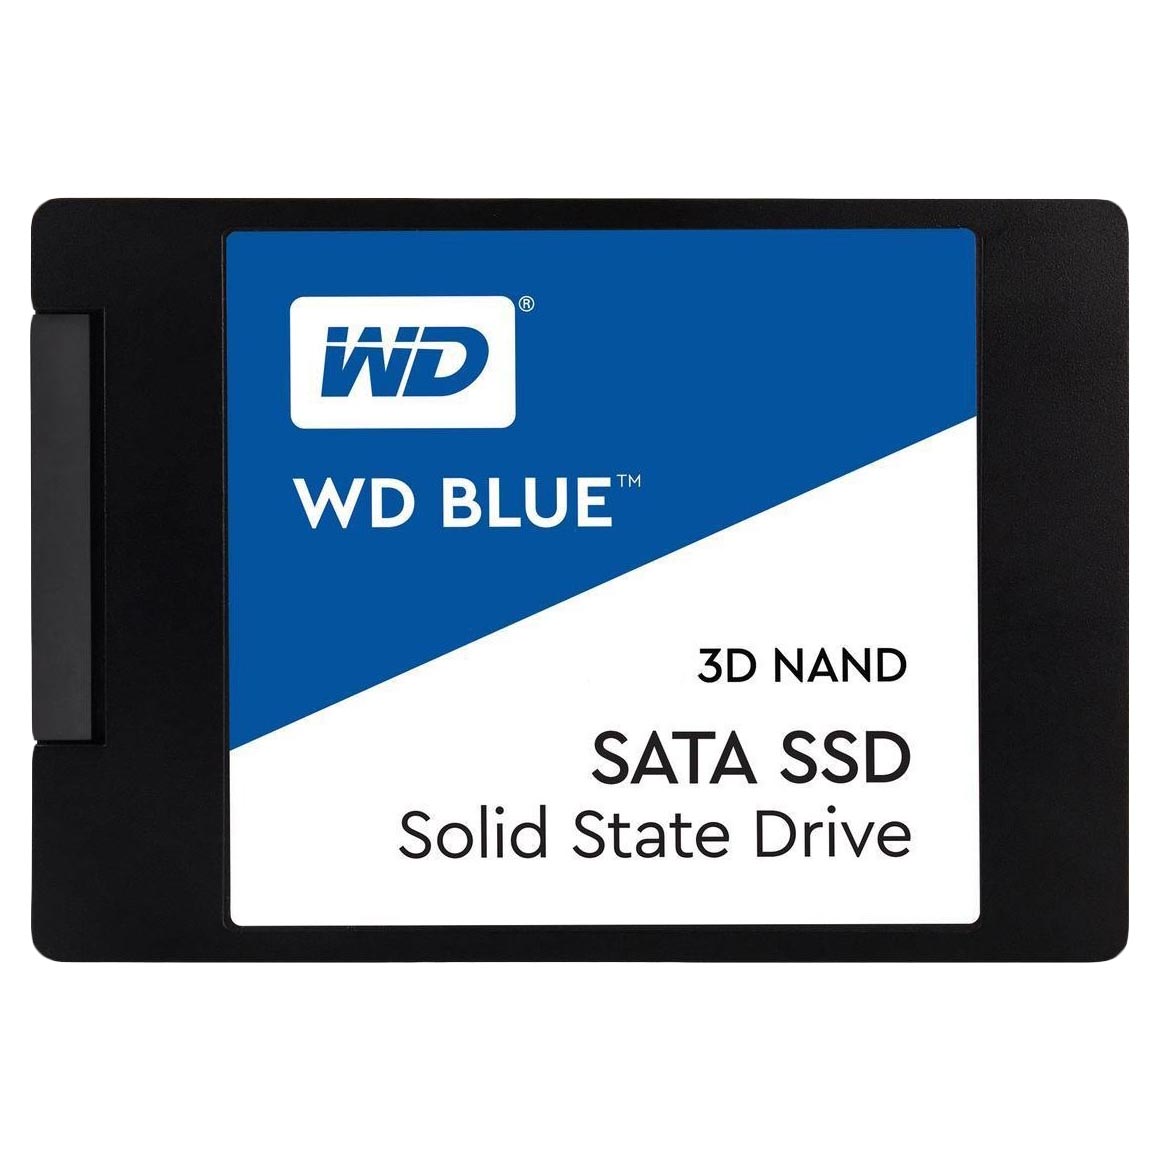 внутренний твердотельный накопитель western digital wd blue sa510 wds250g3b0a 250гб 2 5 Внутренний твердотельный накопитель Western Digital WD Blue SATA, WDS250G2B0A, 250Гб, 2,5